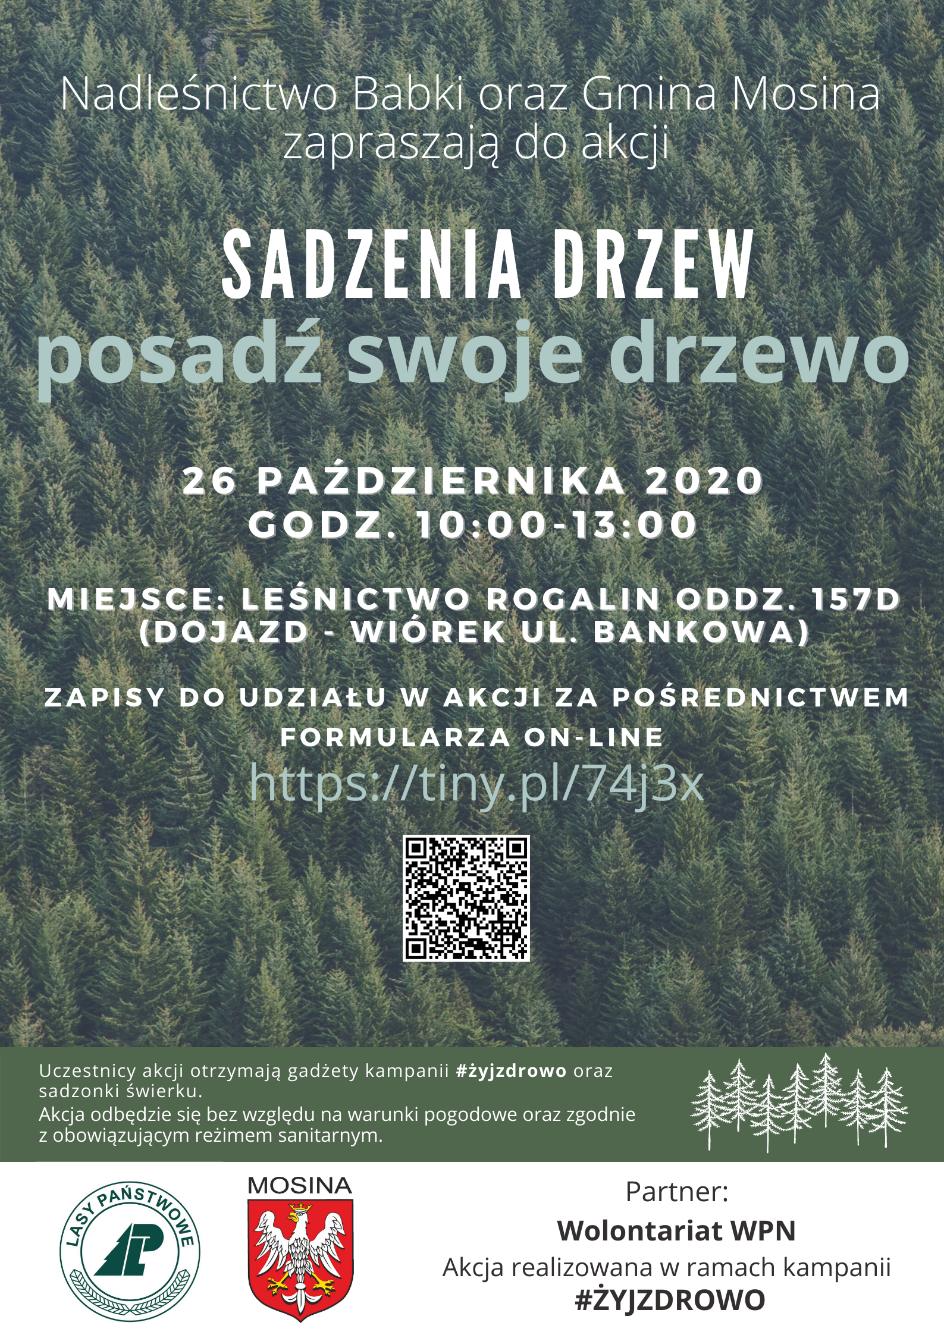 Plakat informujący o akcji sadzenia drzew na terenie leśnictwa Rogalin